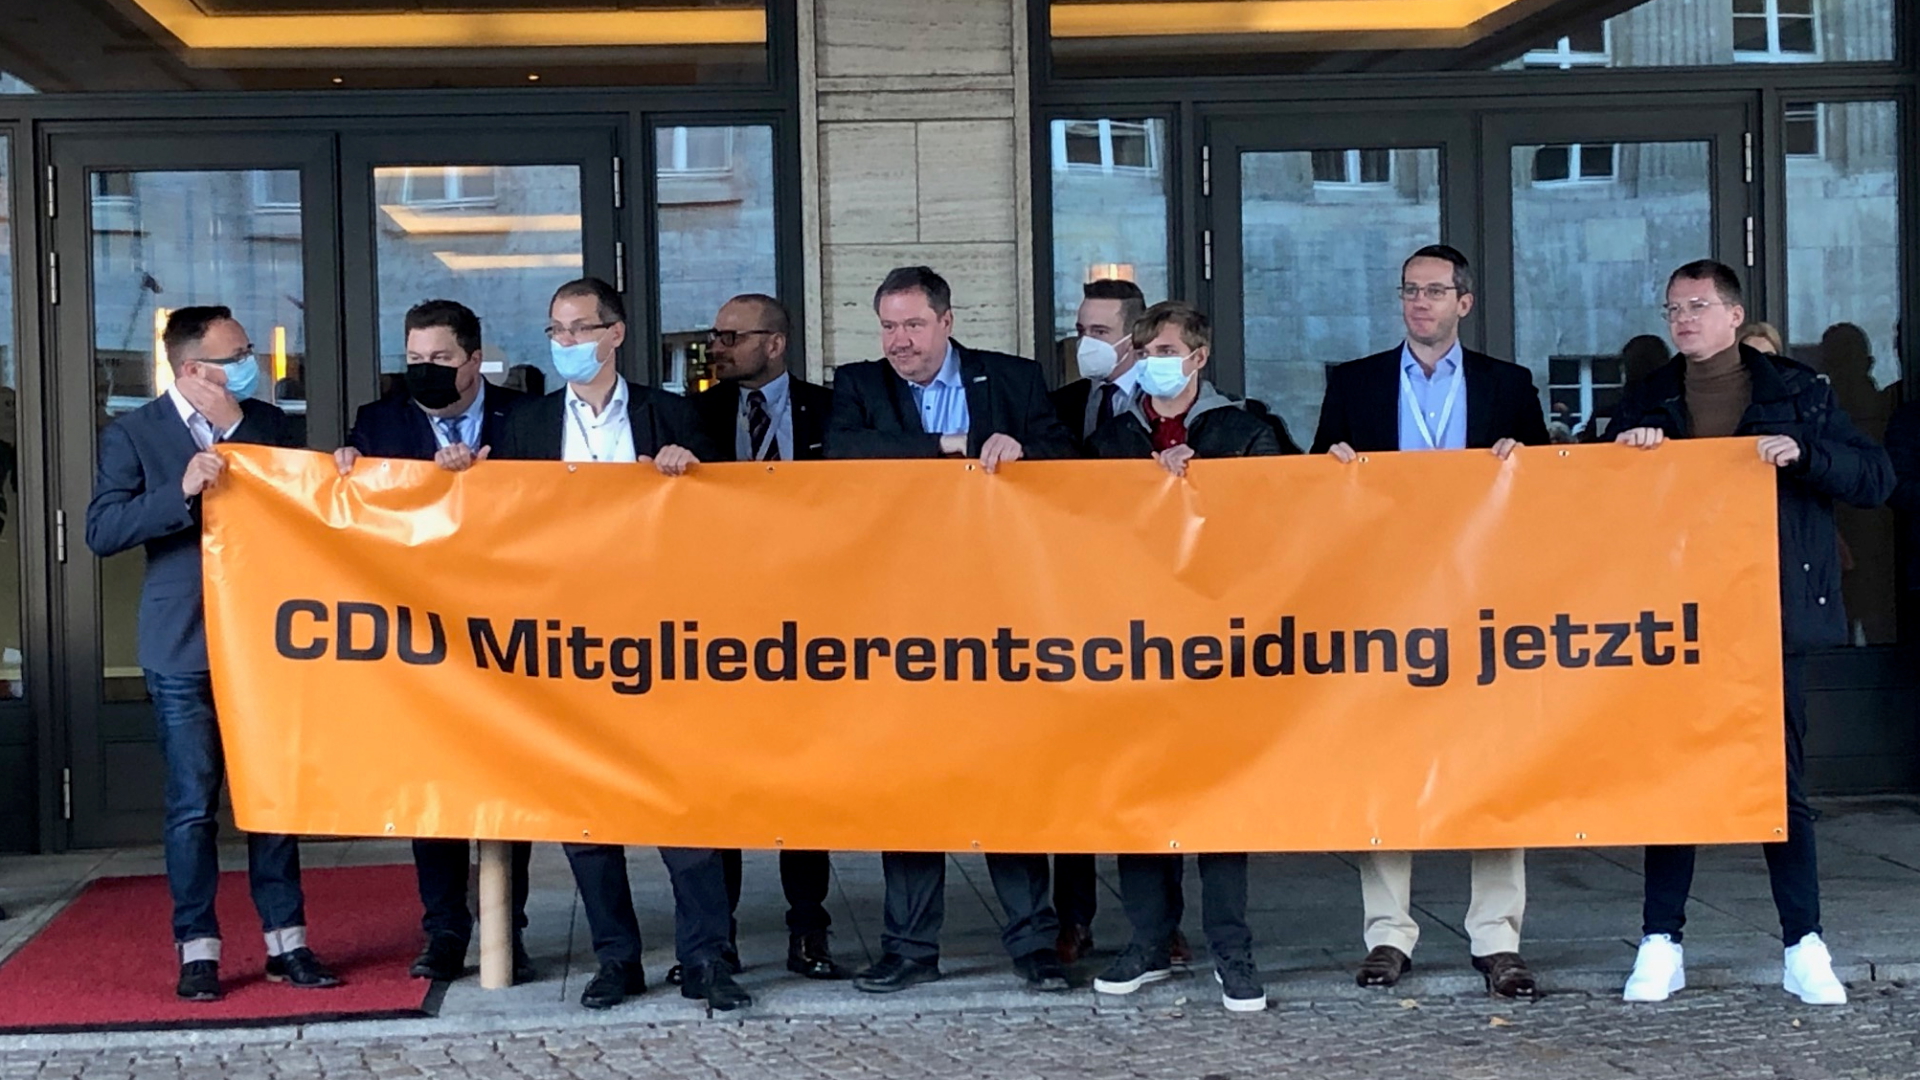 Mitglieder der Jungen Union halten ein Transparat mit der Forderung: "CDU Mitgliederentscheidung jetzt!" | dpa